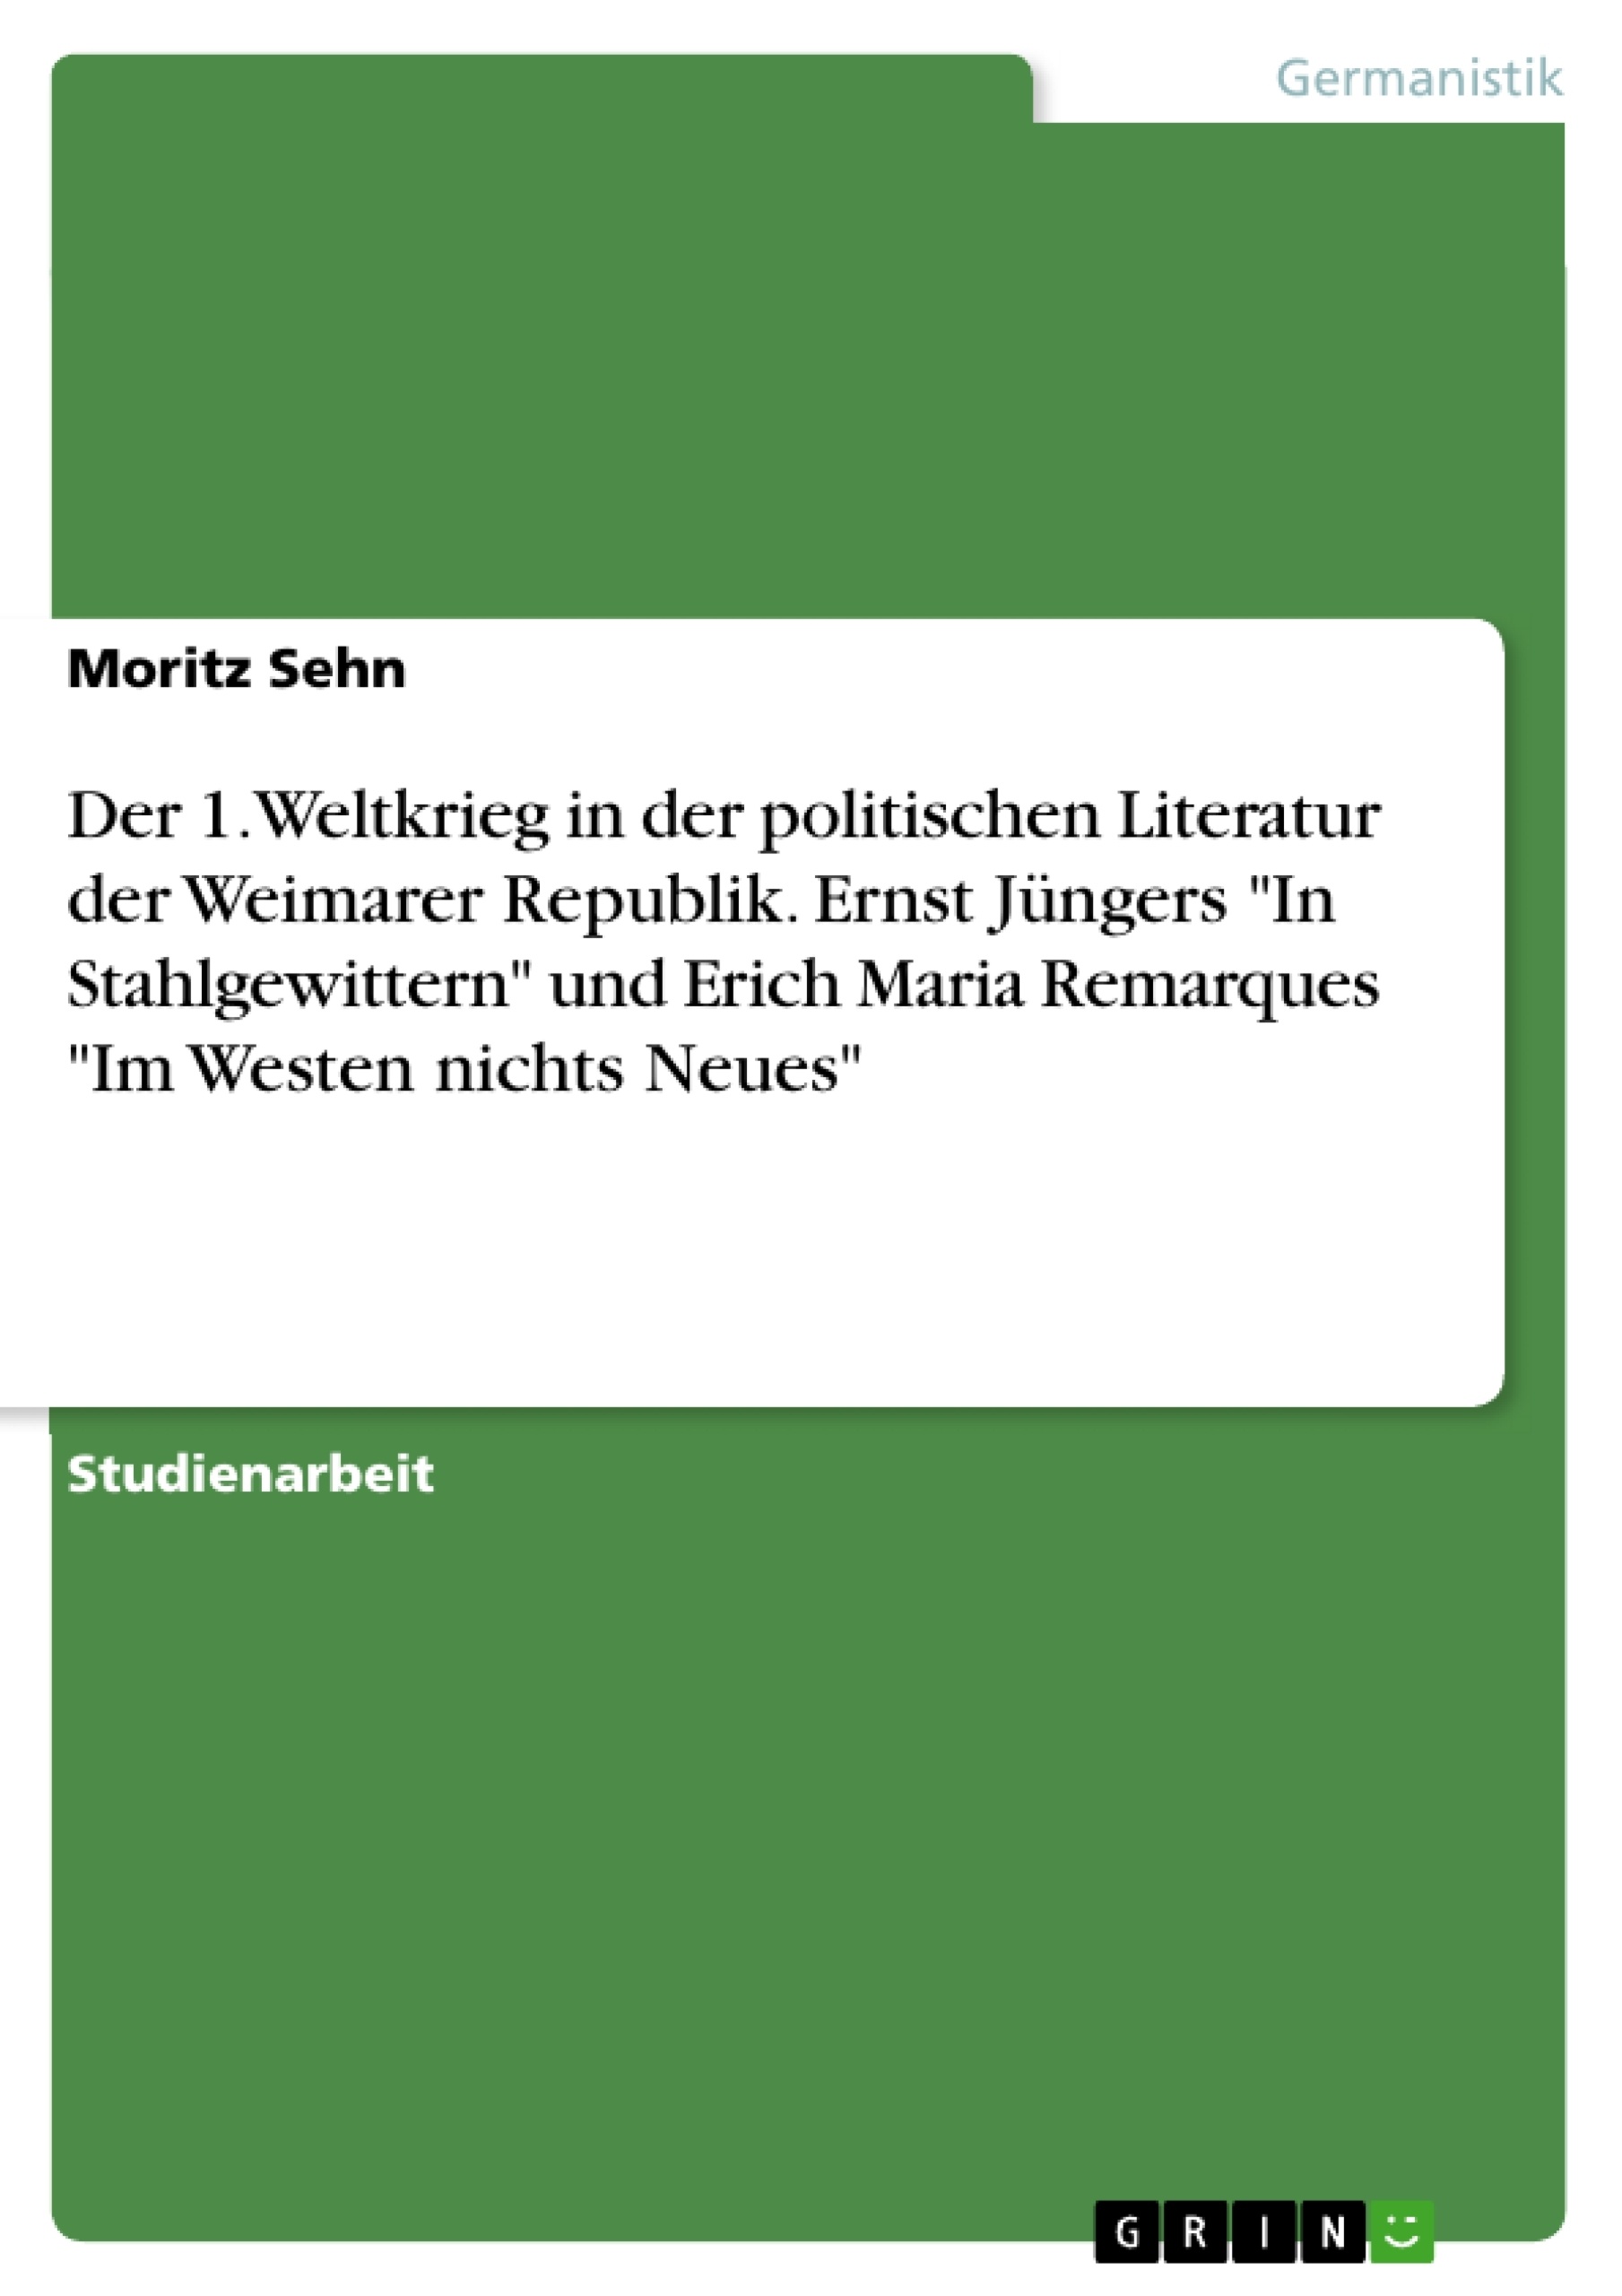 Titel: Der 1. Weltkrieg in der politischen Literatur der Weimarer Republik. Ernst Jüngers "In Stahlgewittern" und Erich Maria Remarques "Im Westen nichts Neues"